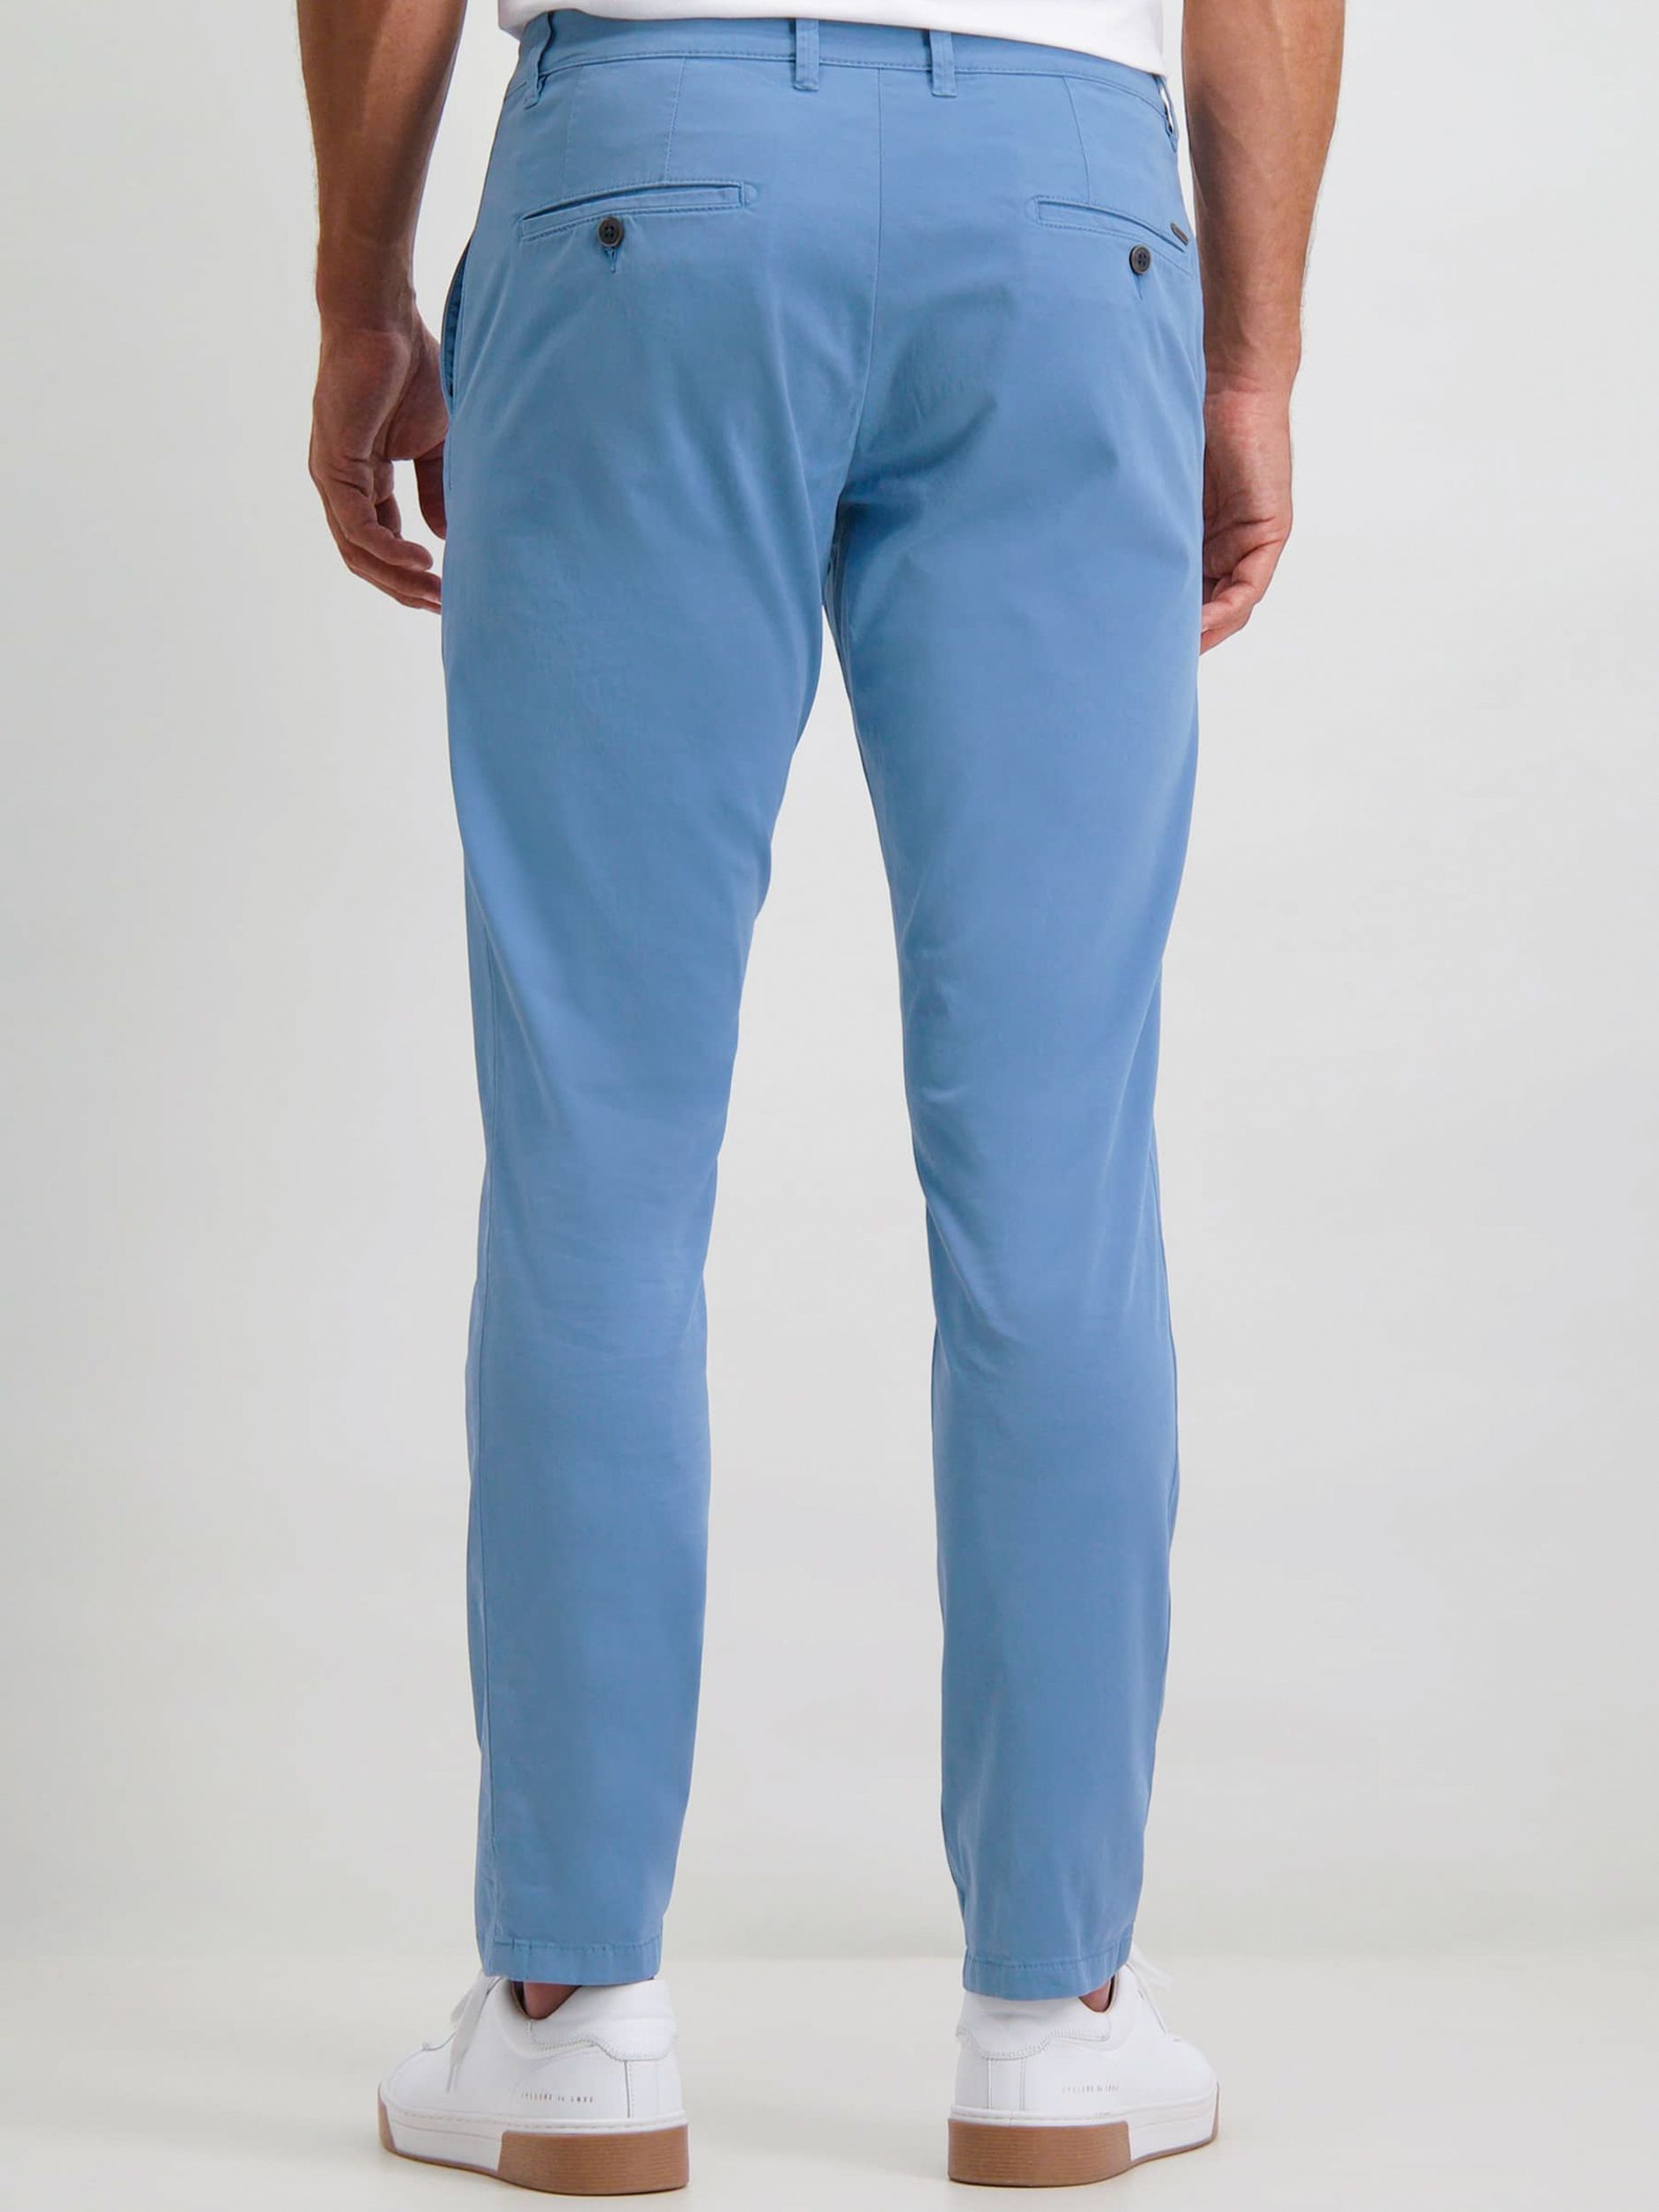 State of Art Pantalon Lengtemaat 32 Donker blauw 095113-001-30